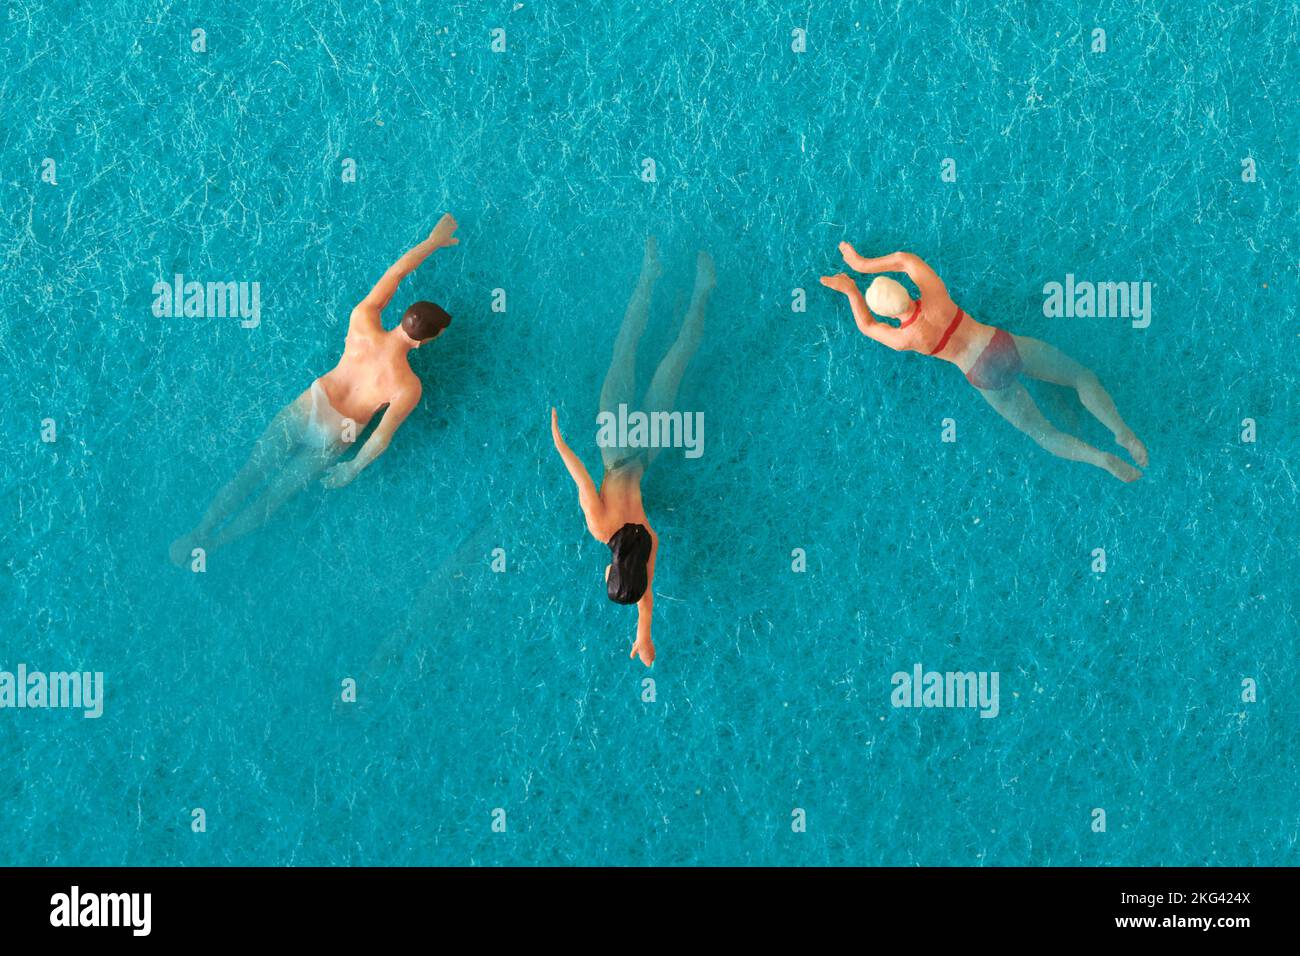 Vista superior de hombre de juguete y mujeres nadando en agua azul de la piscina Foto de stock